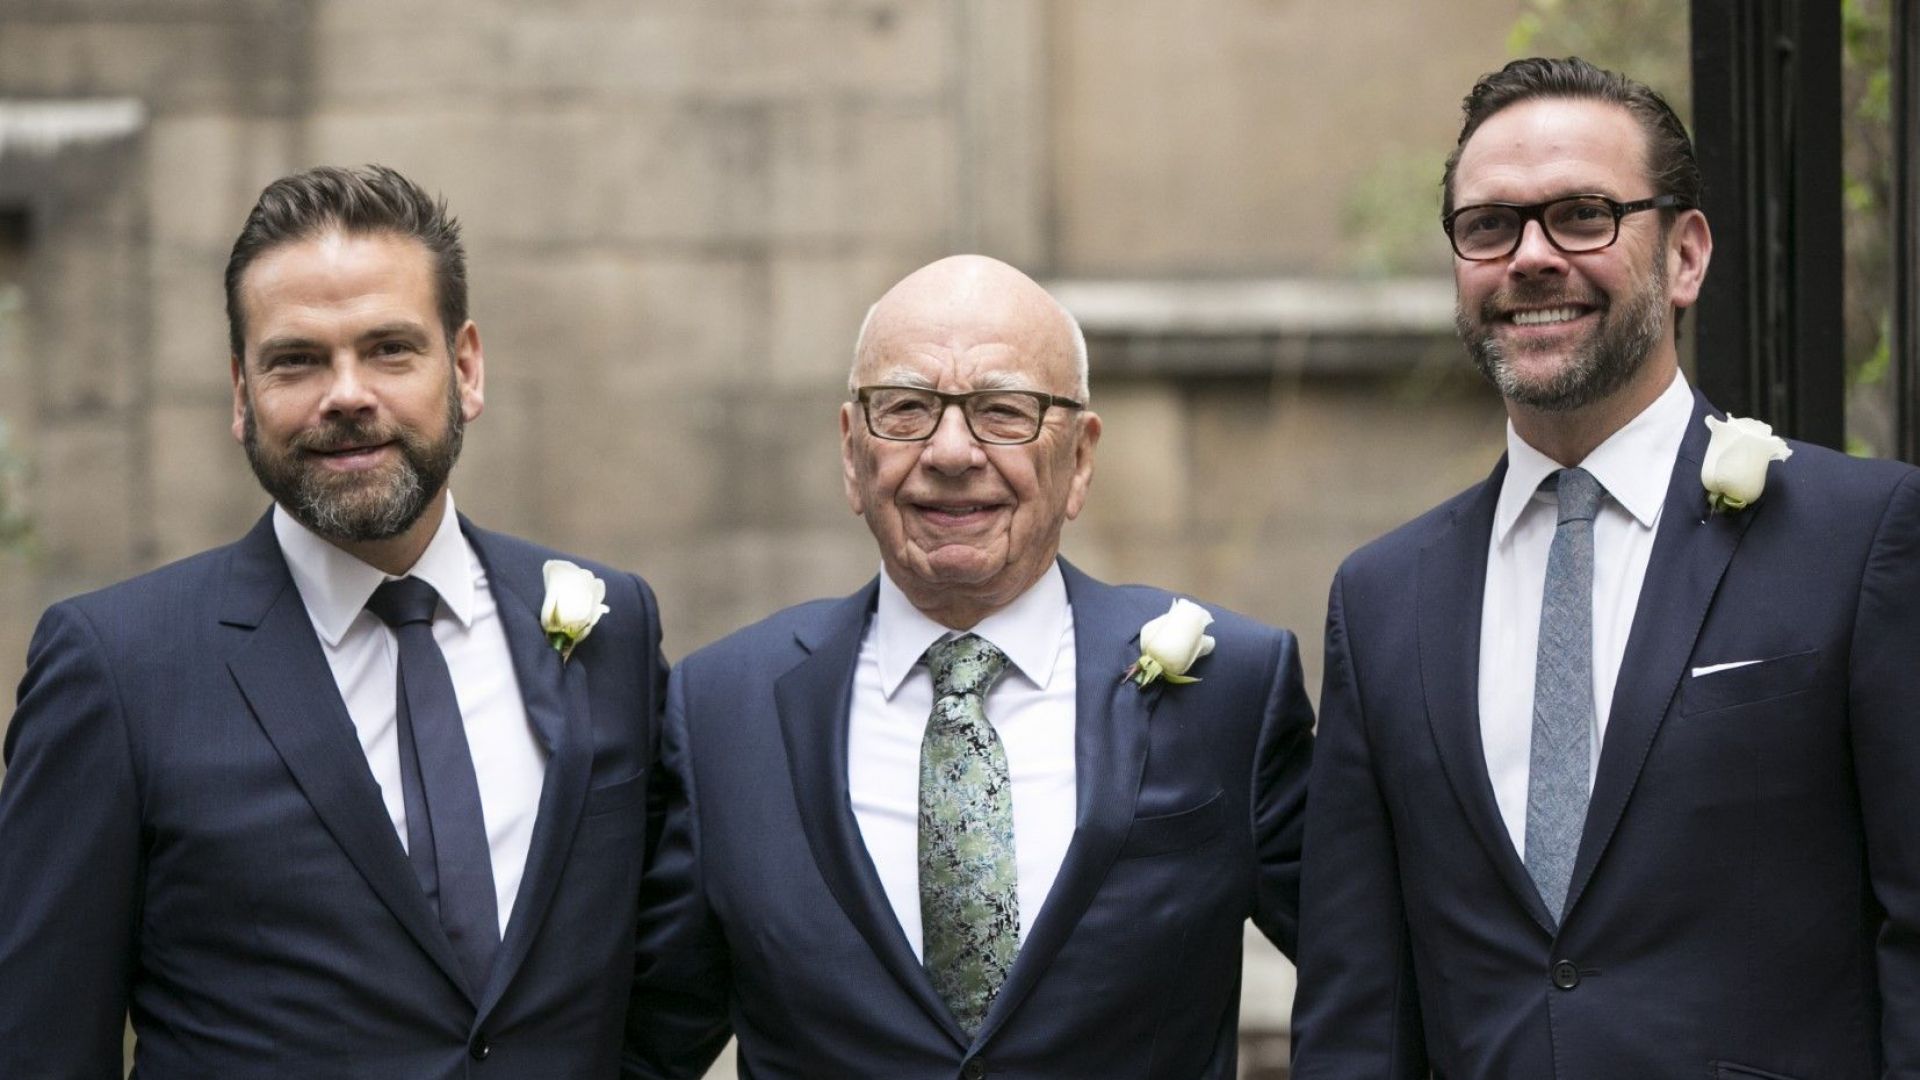 Рупърт Мърдок и двамата му сина - Джеймс (вдясно) и Лаклан (вляво), на 5 март 2016 г., ден след сватбата му в Лондон с Джери Хол. Джеймс се оттегли, Лаклан управлява голяма част от бизнеса